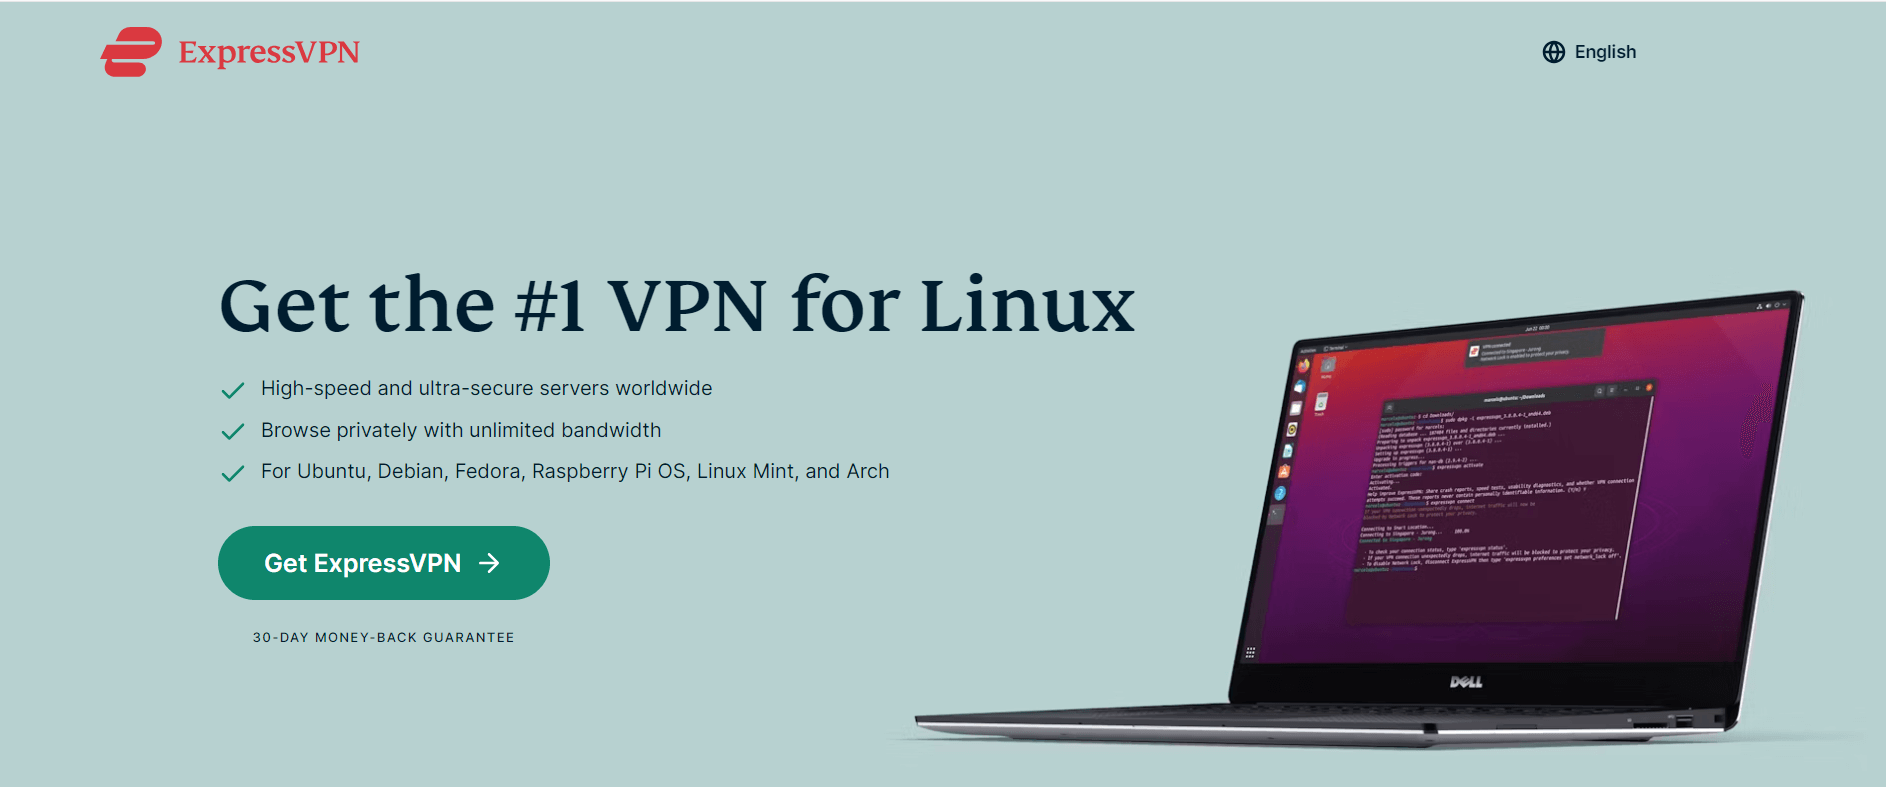 expressvpn-download-linux-in-UAE